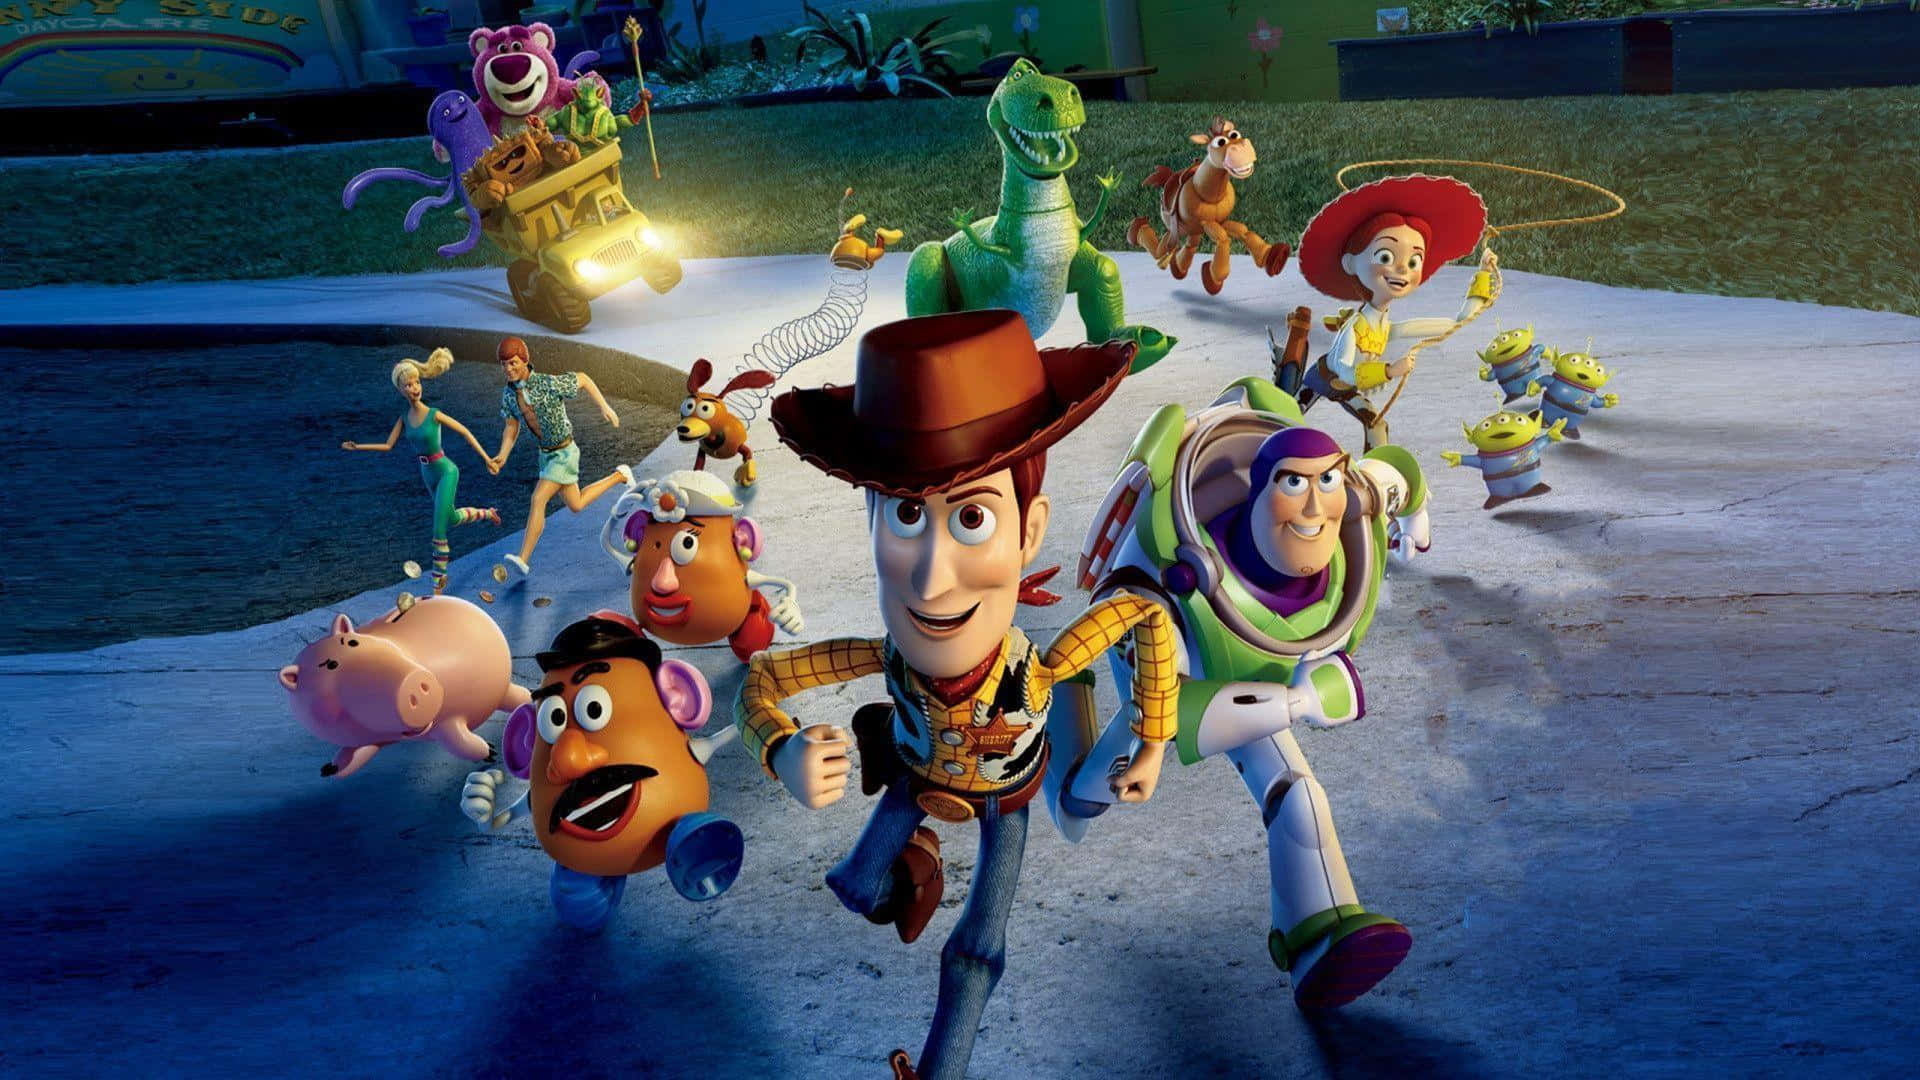 Bedste Disney baggrundsfigurer fra Toy Story 3